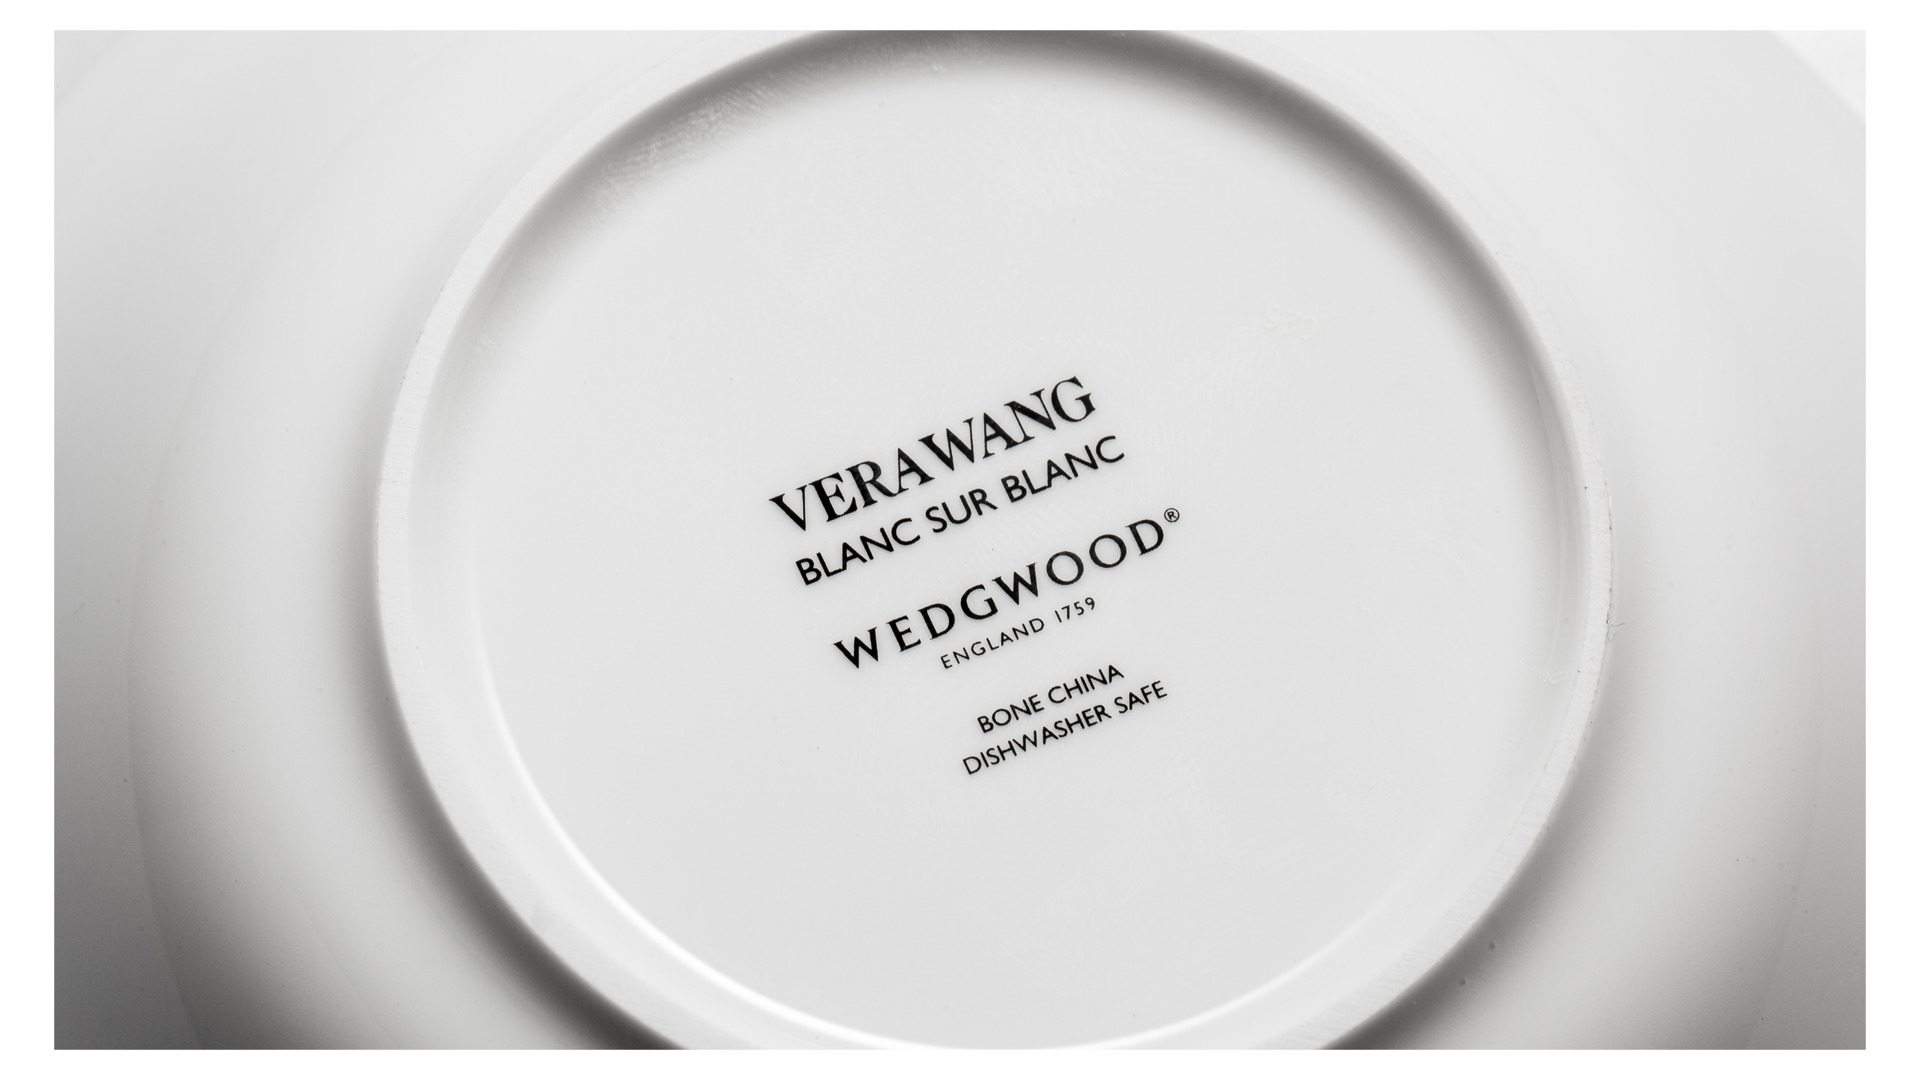 Сервиз столовый Wedgwood Вера Ванг Белая Коллекция на 6 персон, 24 предмета, фарфор